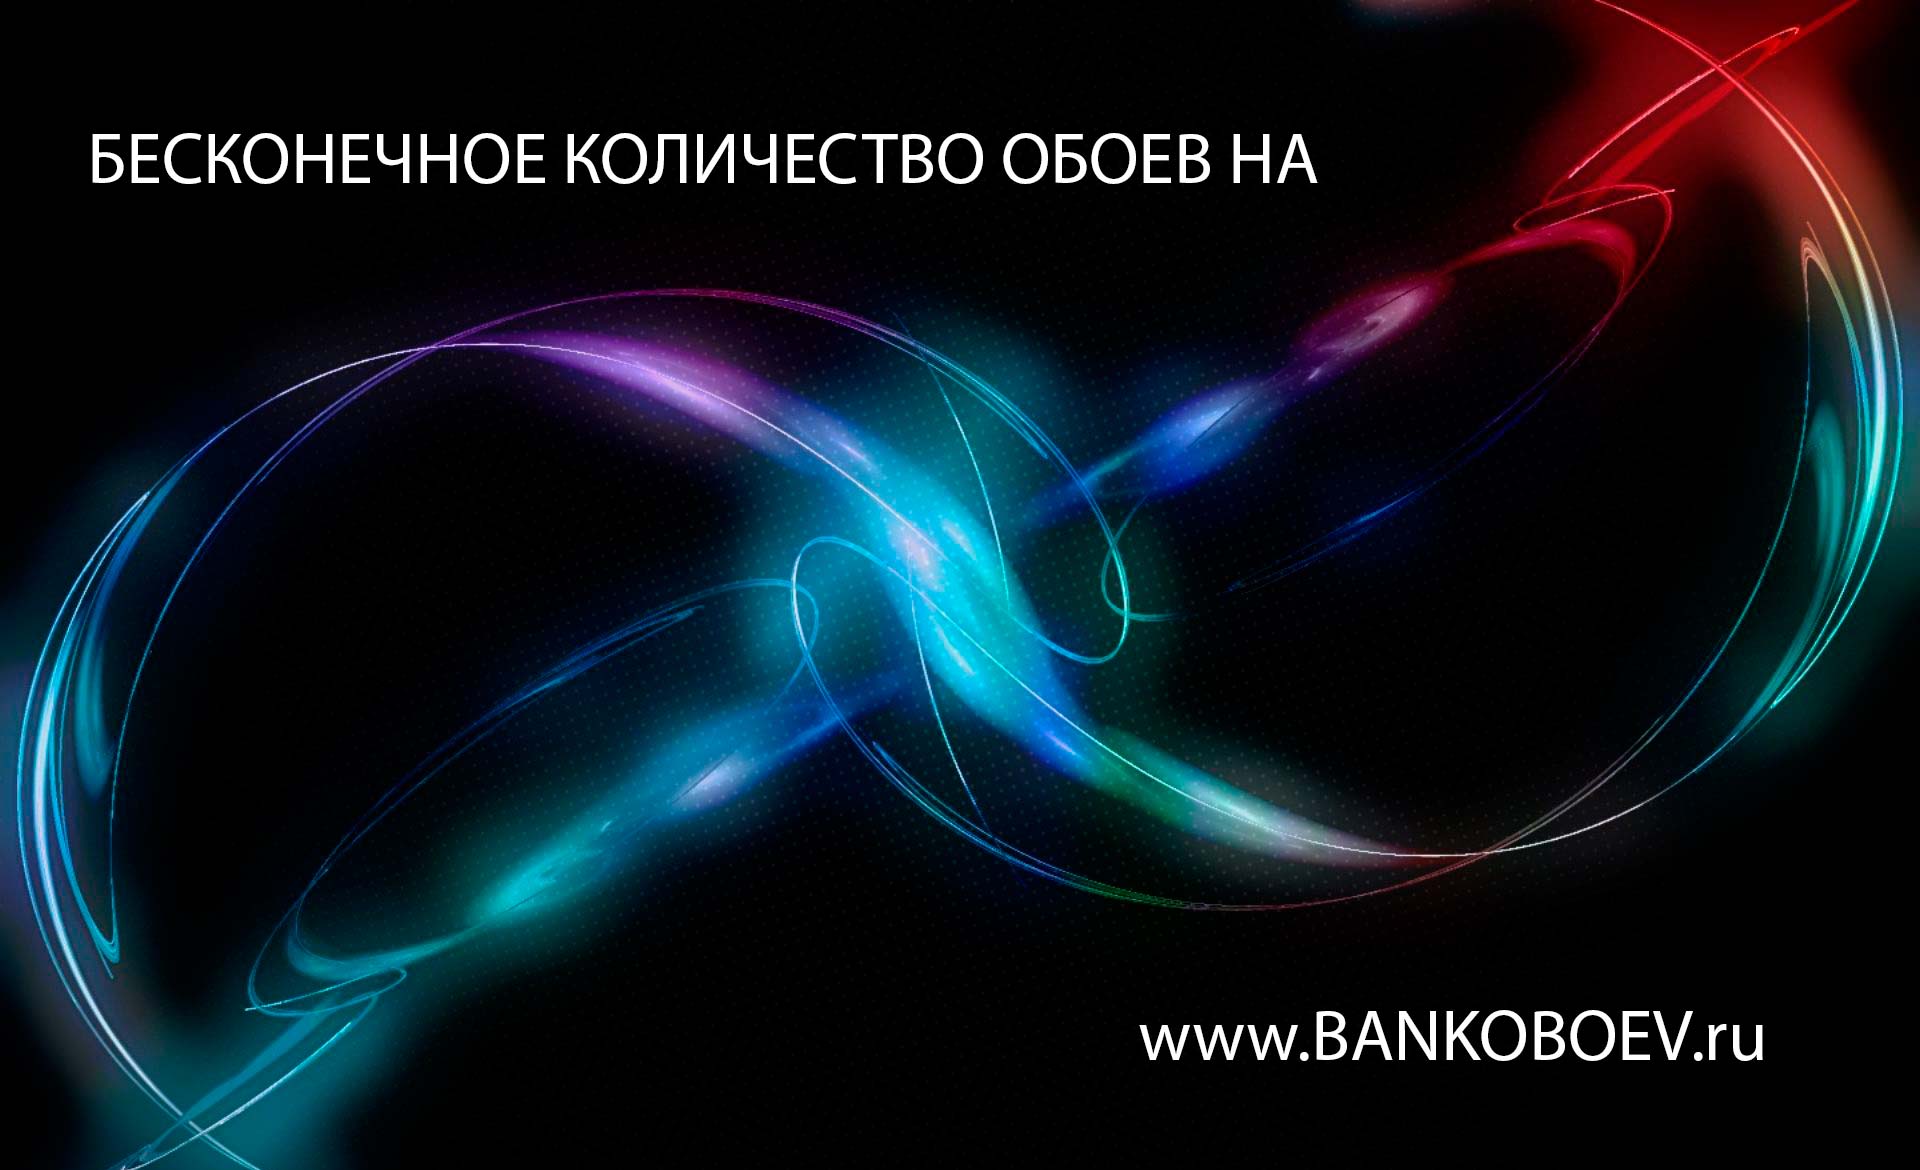 Bankoboev Ru Image Mjm5mde4 Jpg